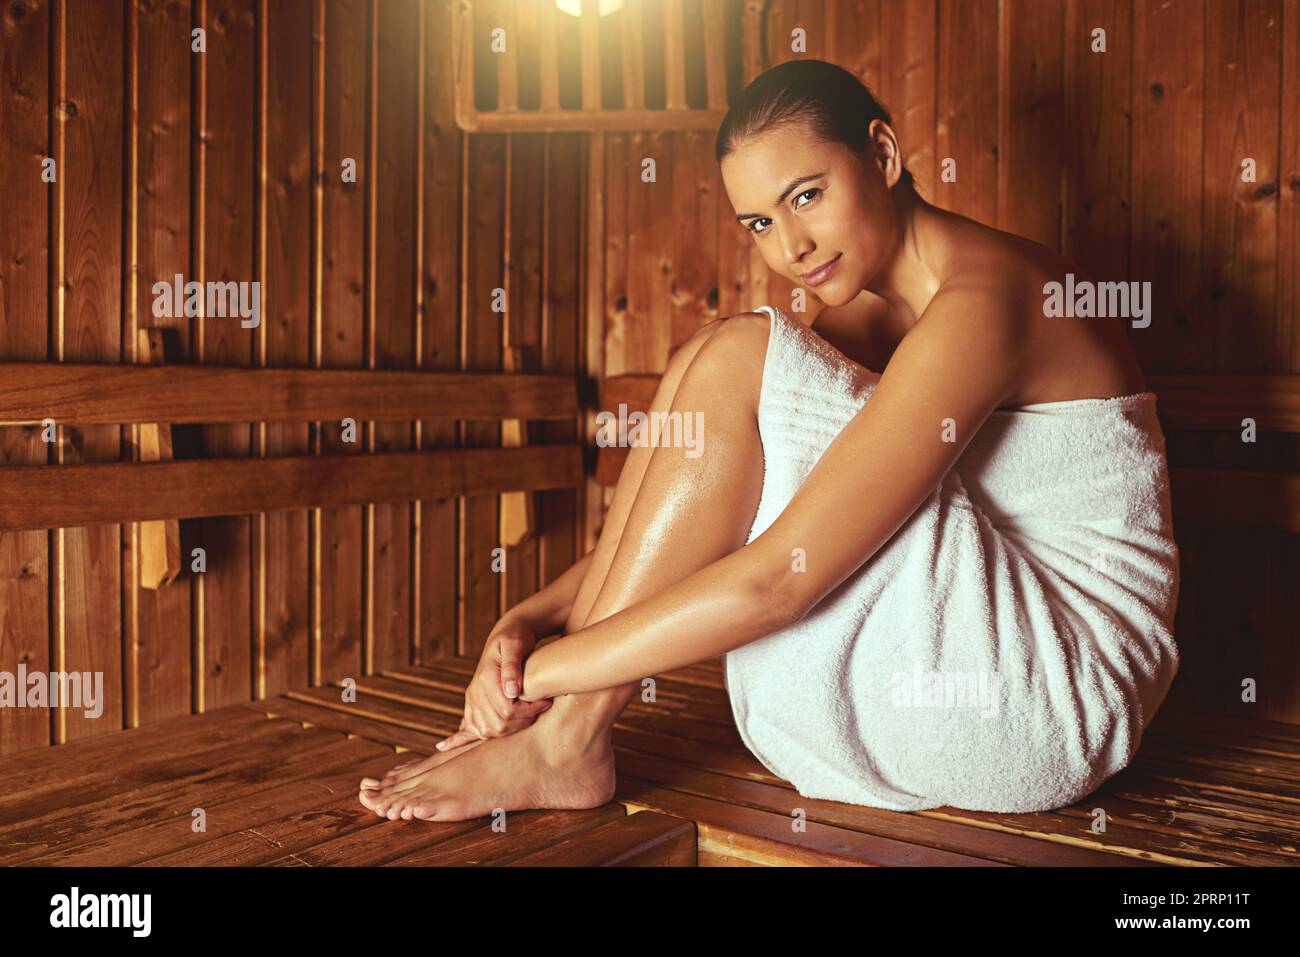 Diese Sauna fühlt sich toll an. Ganzkörperportrait einer jungen Frau, die sich in der Sauna in einem Spa entspannt. Stockfoto